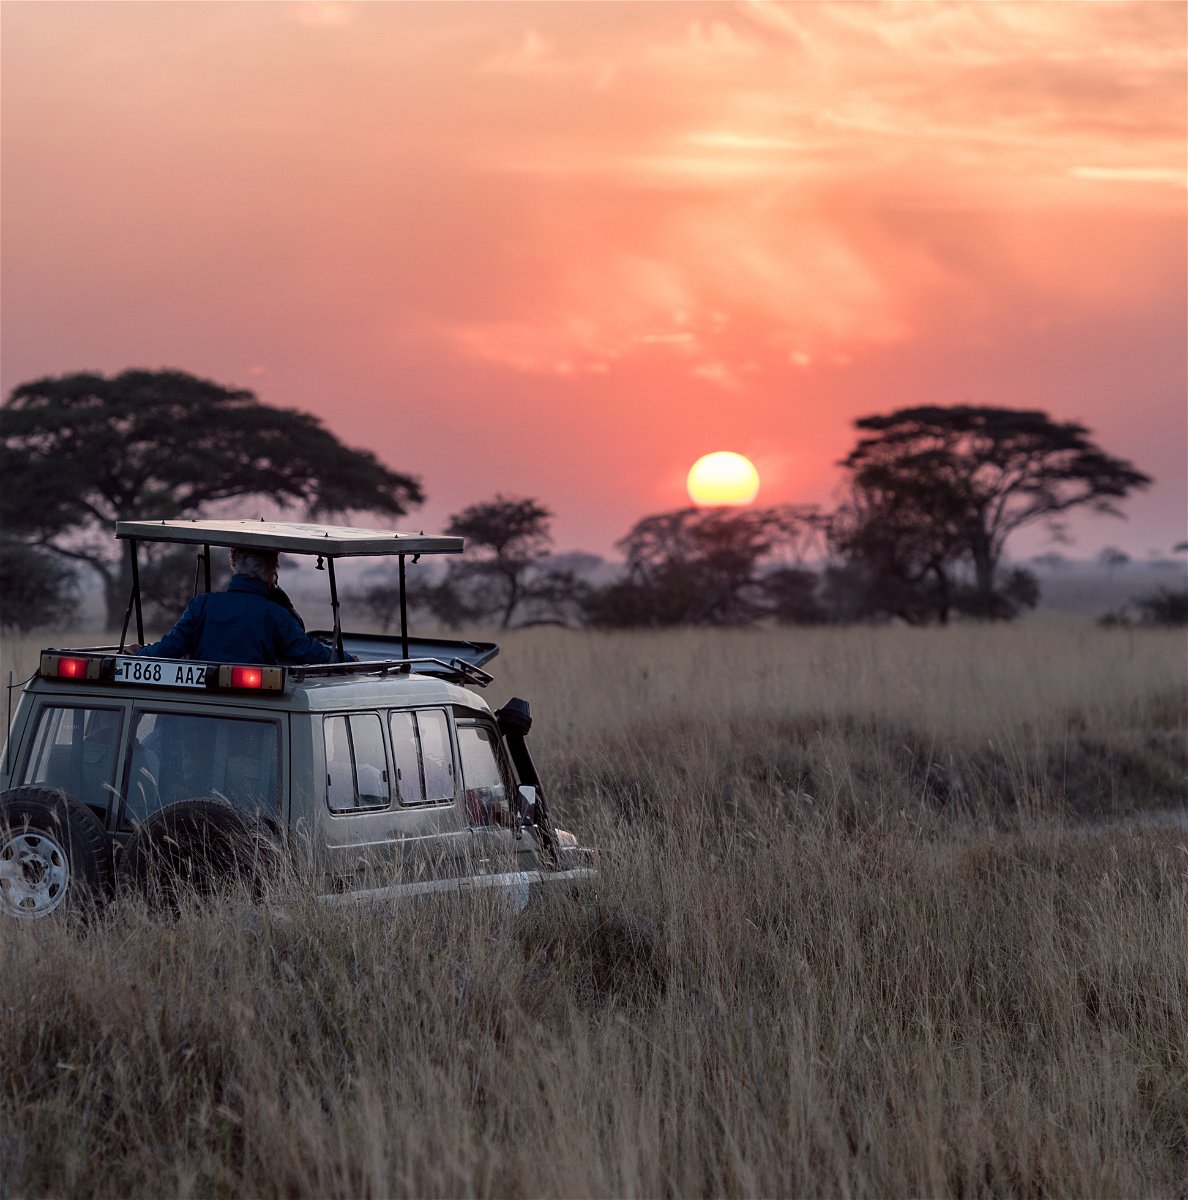 safari truck at sunset in Kenya National Park